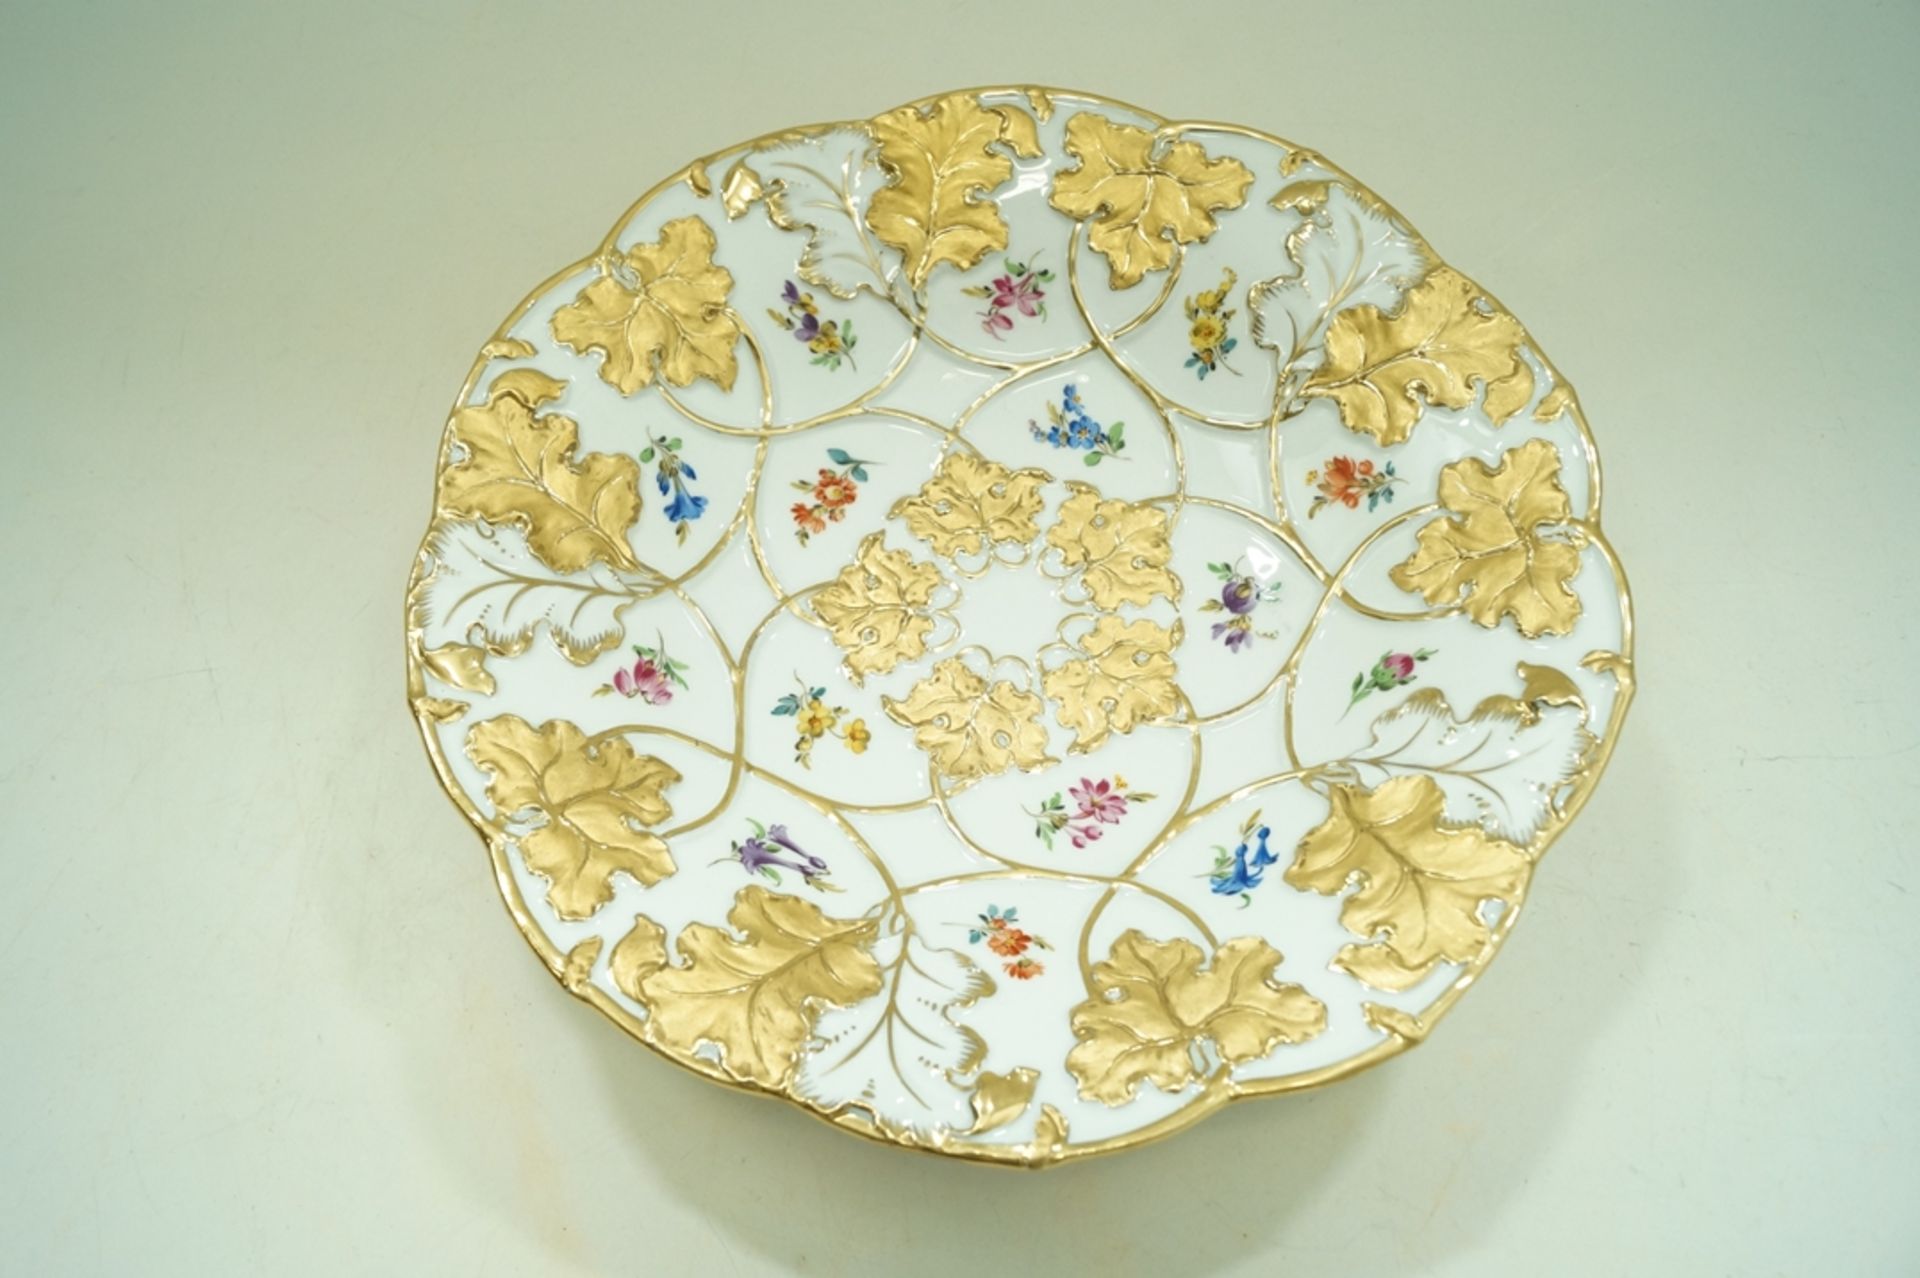 Prachtvoller Meissen Prunkteller mit Blatt- und Blumendekor; mit Glanz- und Mattgold gemaltes Blatt - Bild 3 aus 4